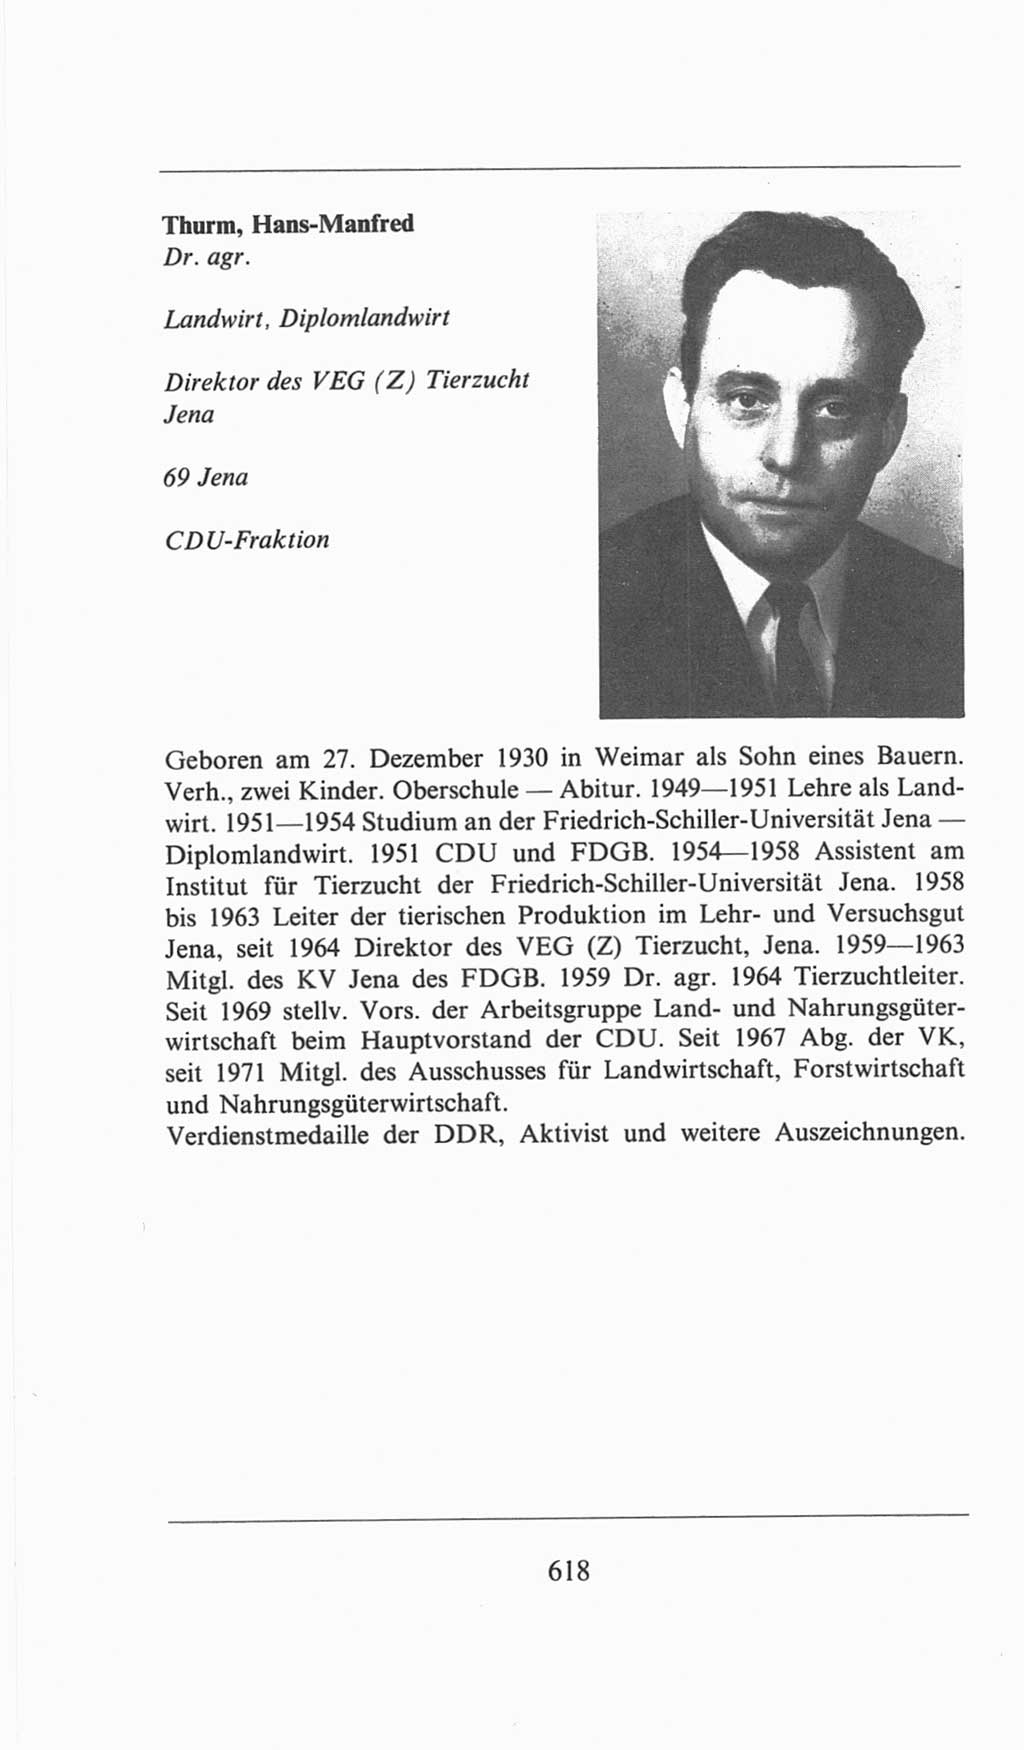 Volkskammer (VK) der Deutschen Demokratischen Republik (DDR), 6. Wahlperiode 1971-1976, Seite 618 (VK. DDR 6. WP. 1971-1976, S. 618)